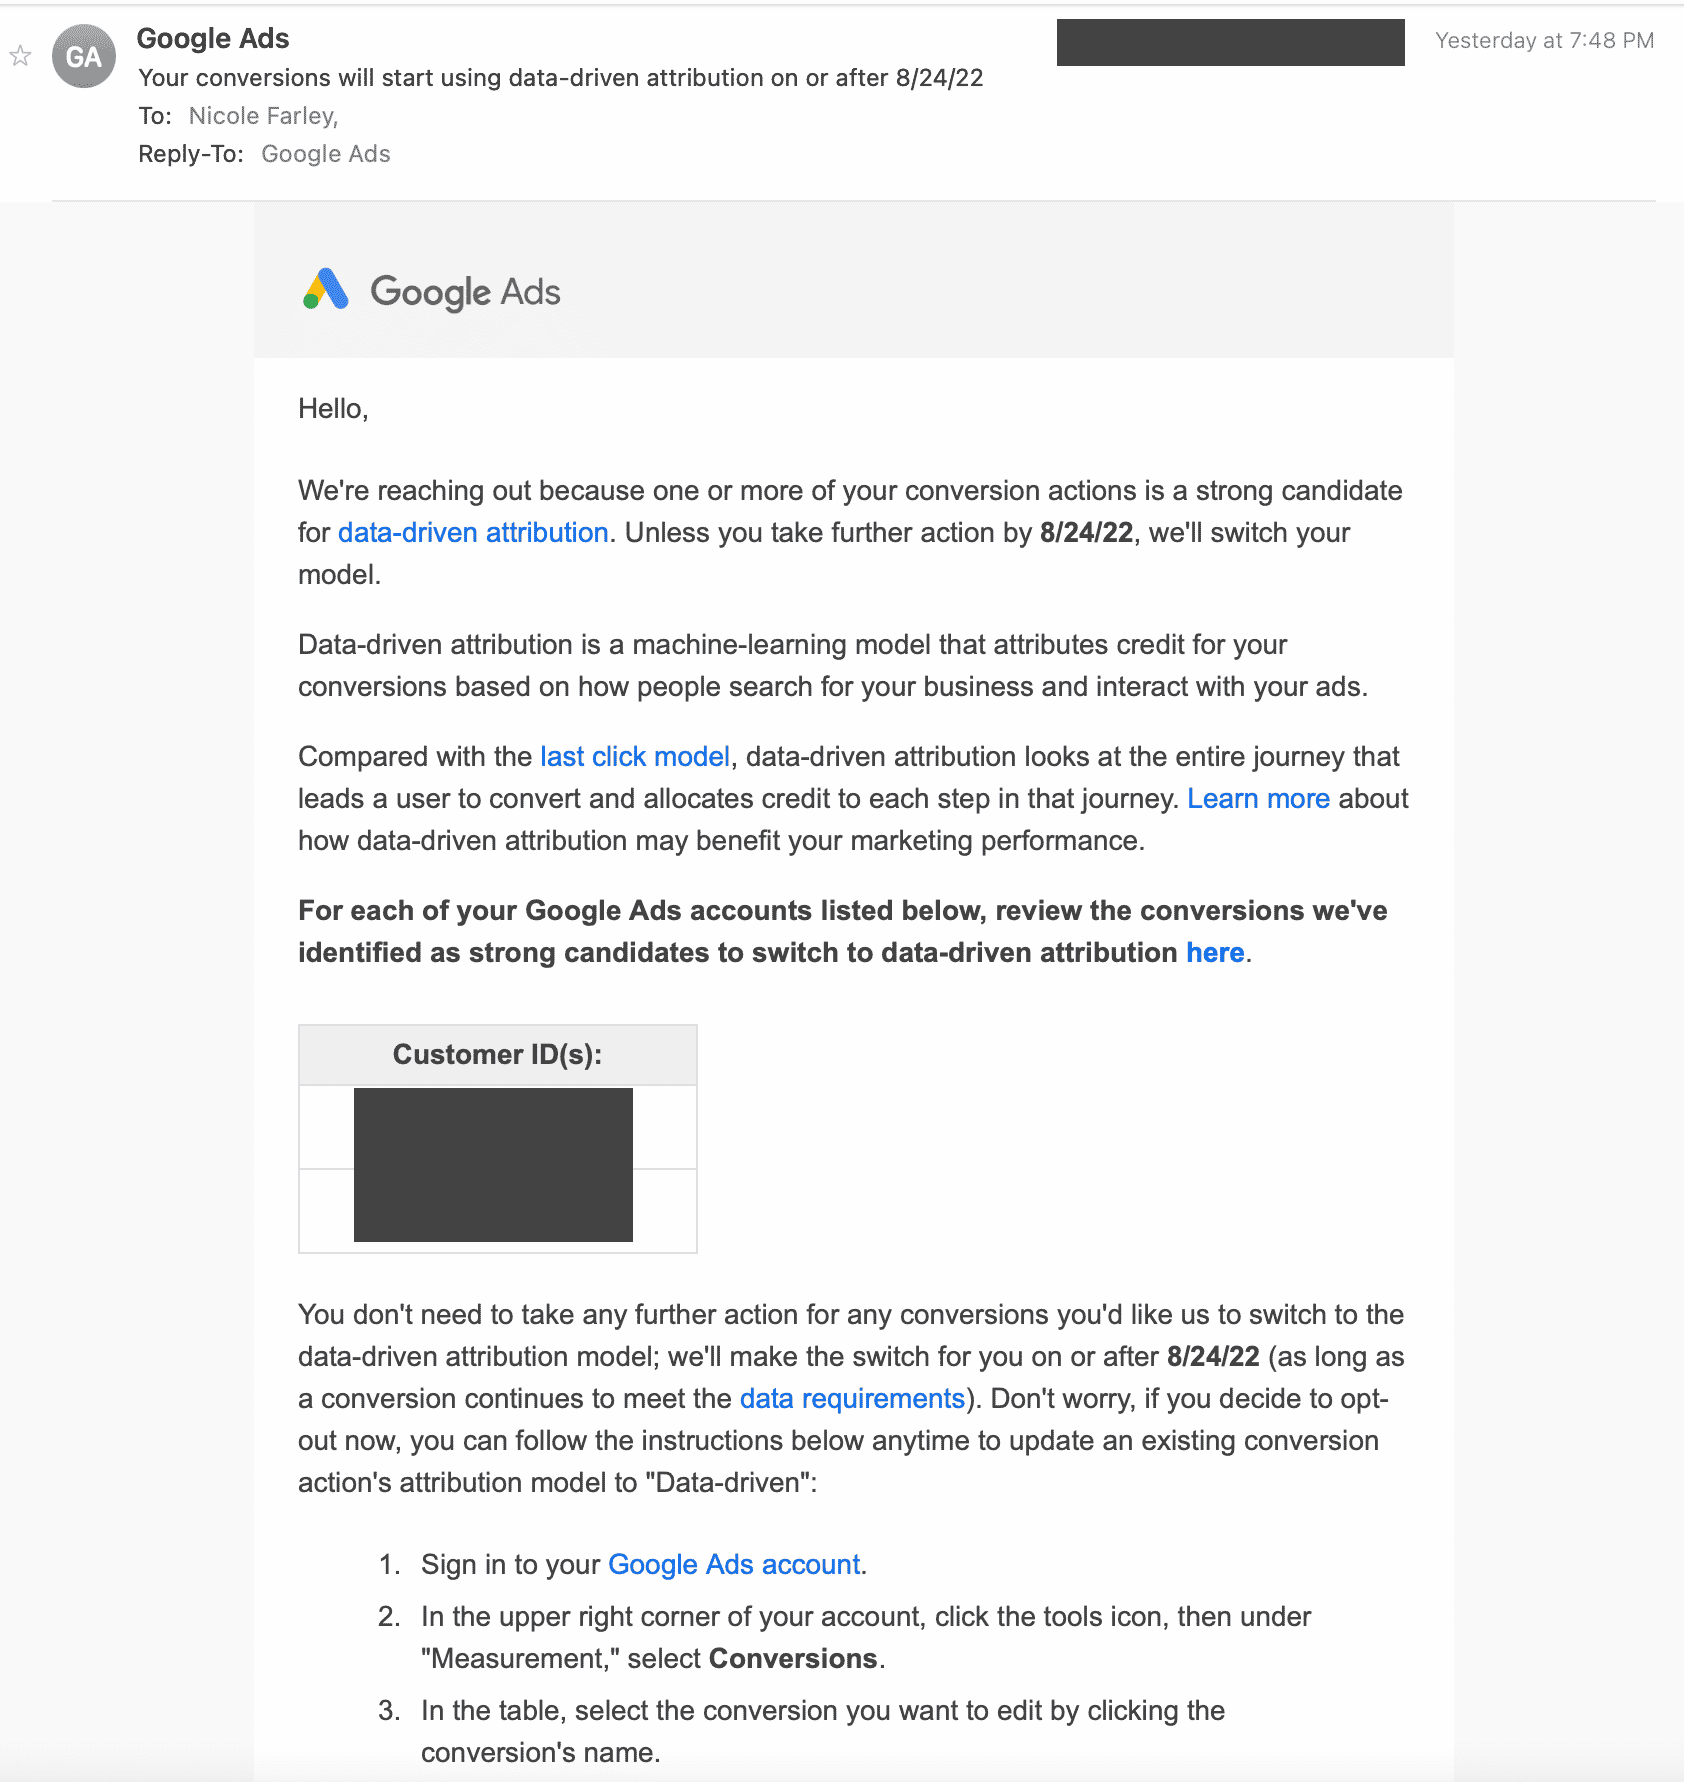 Google Ads informiert per Mail über Umstellung auf datengetriebenes Attributionsmodell